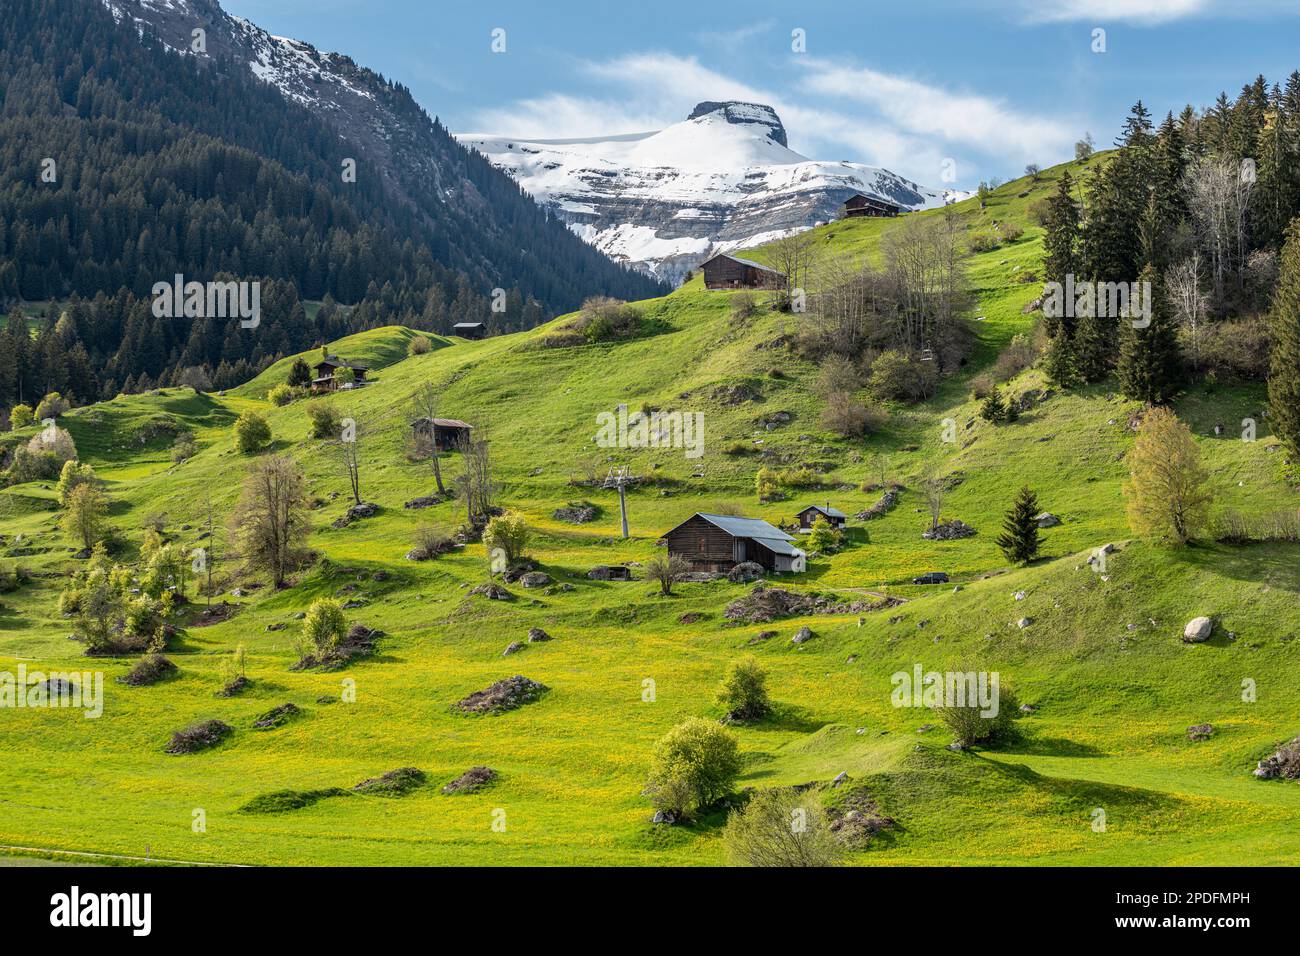 Paysage d'été à Brigels avec le mont da Rudi sommet dans le fond contre un ciel bleu. Brigels, Suisse. Banque D'Images